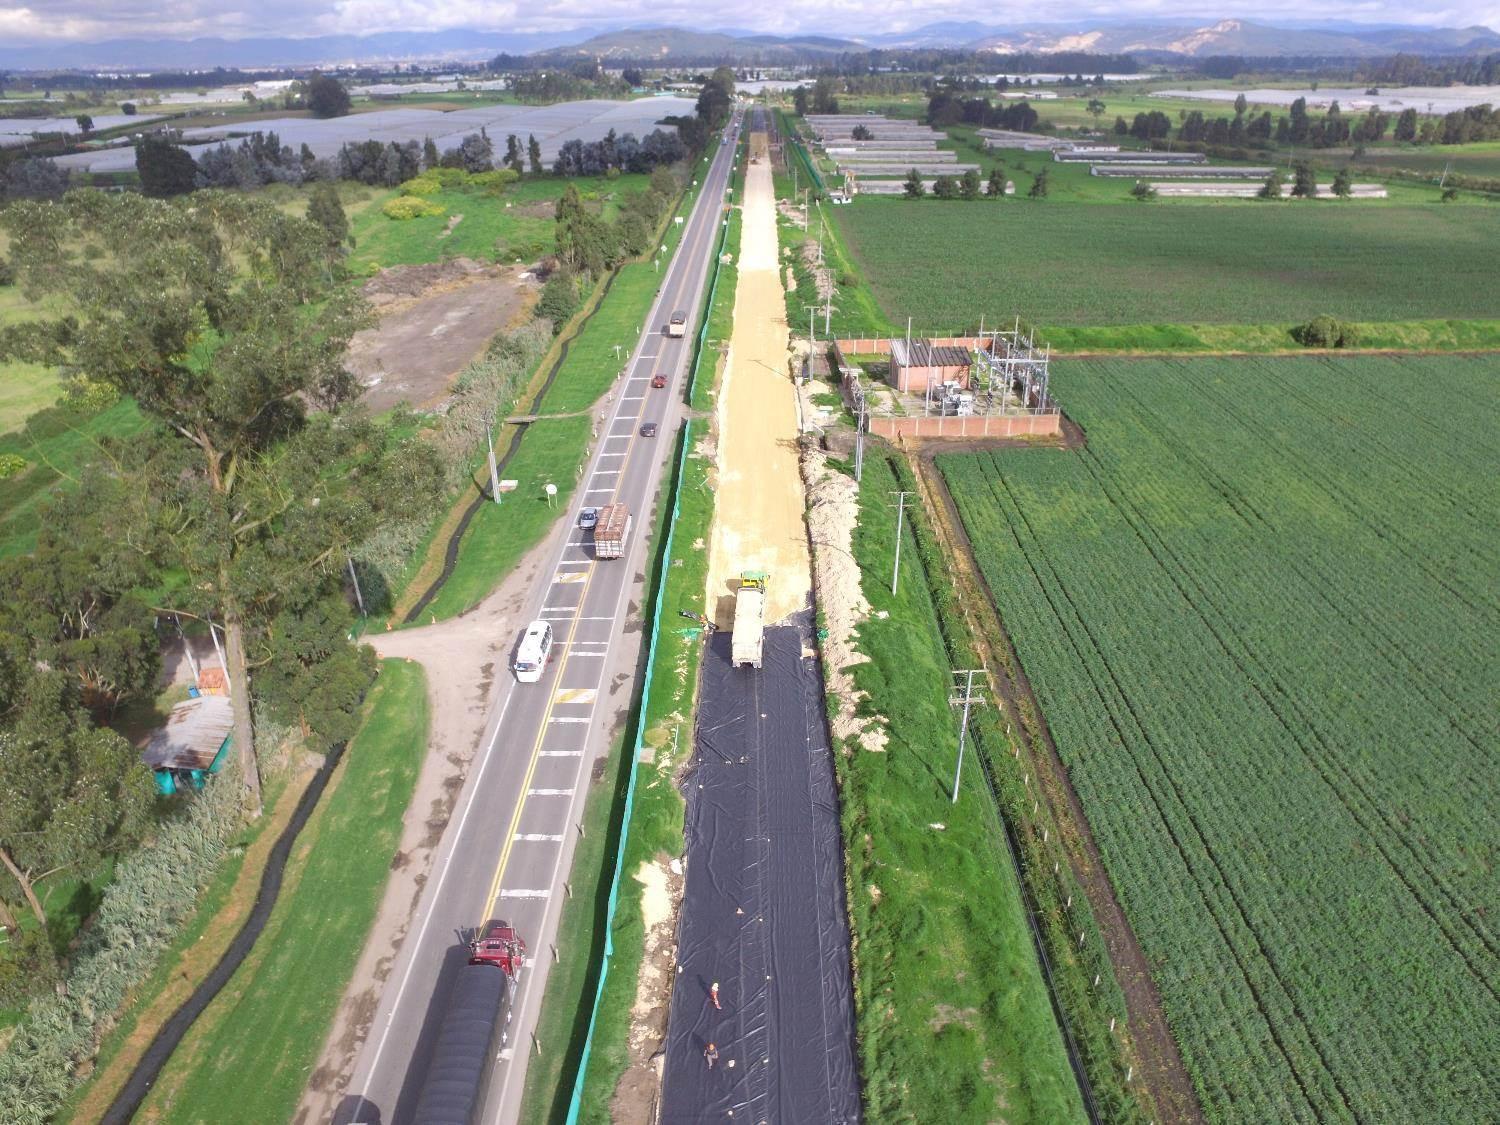 Una carretera en un campo verde

Descripción generada automáticamente